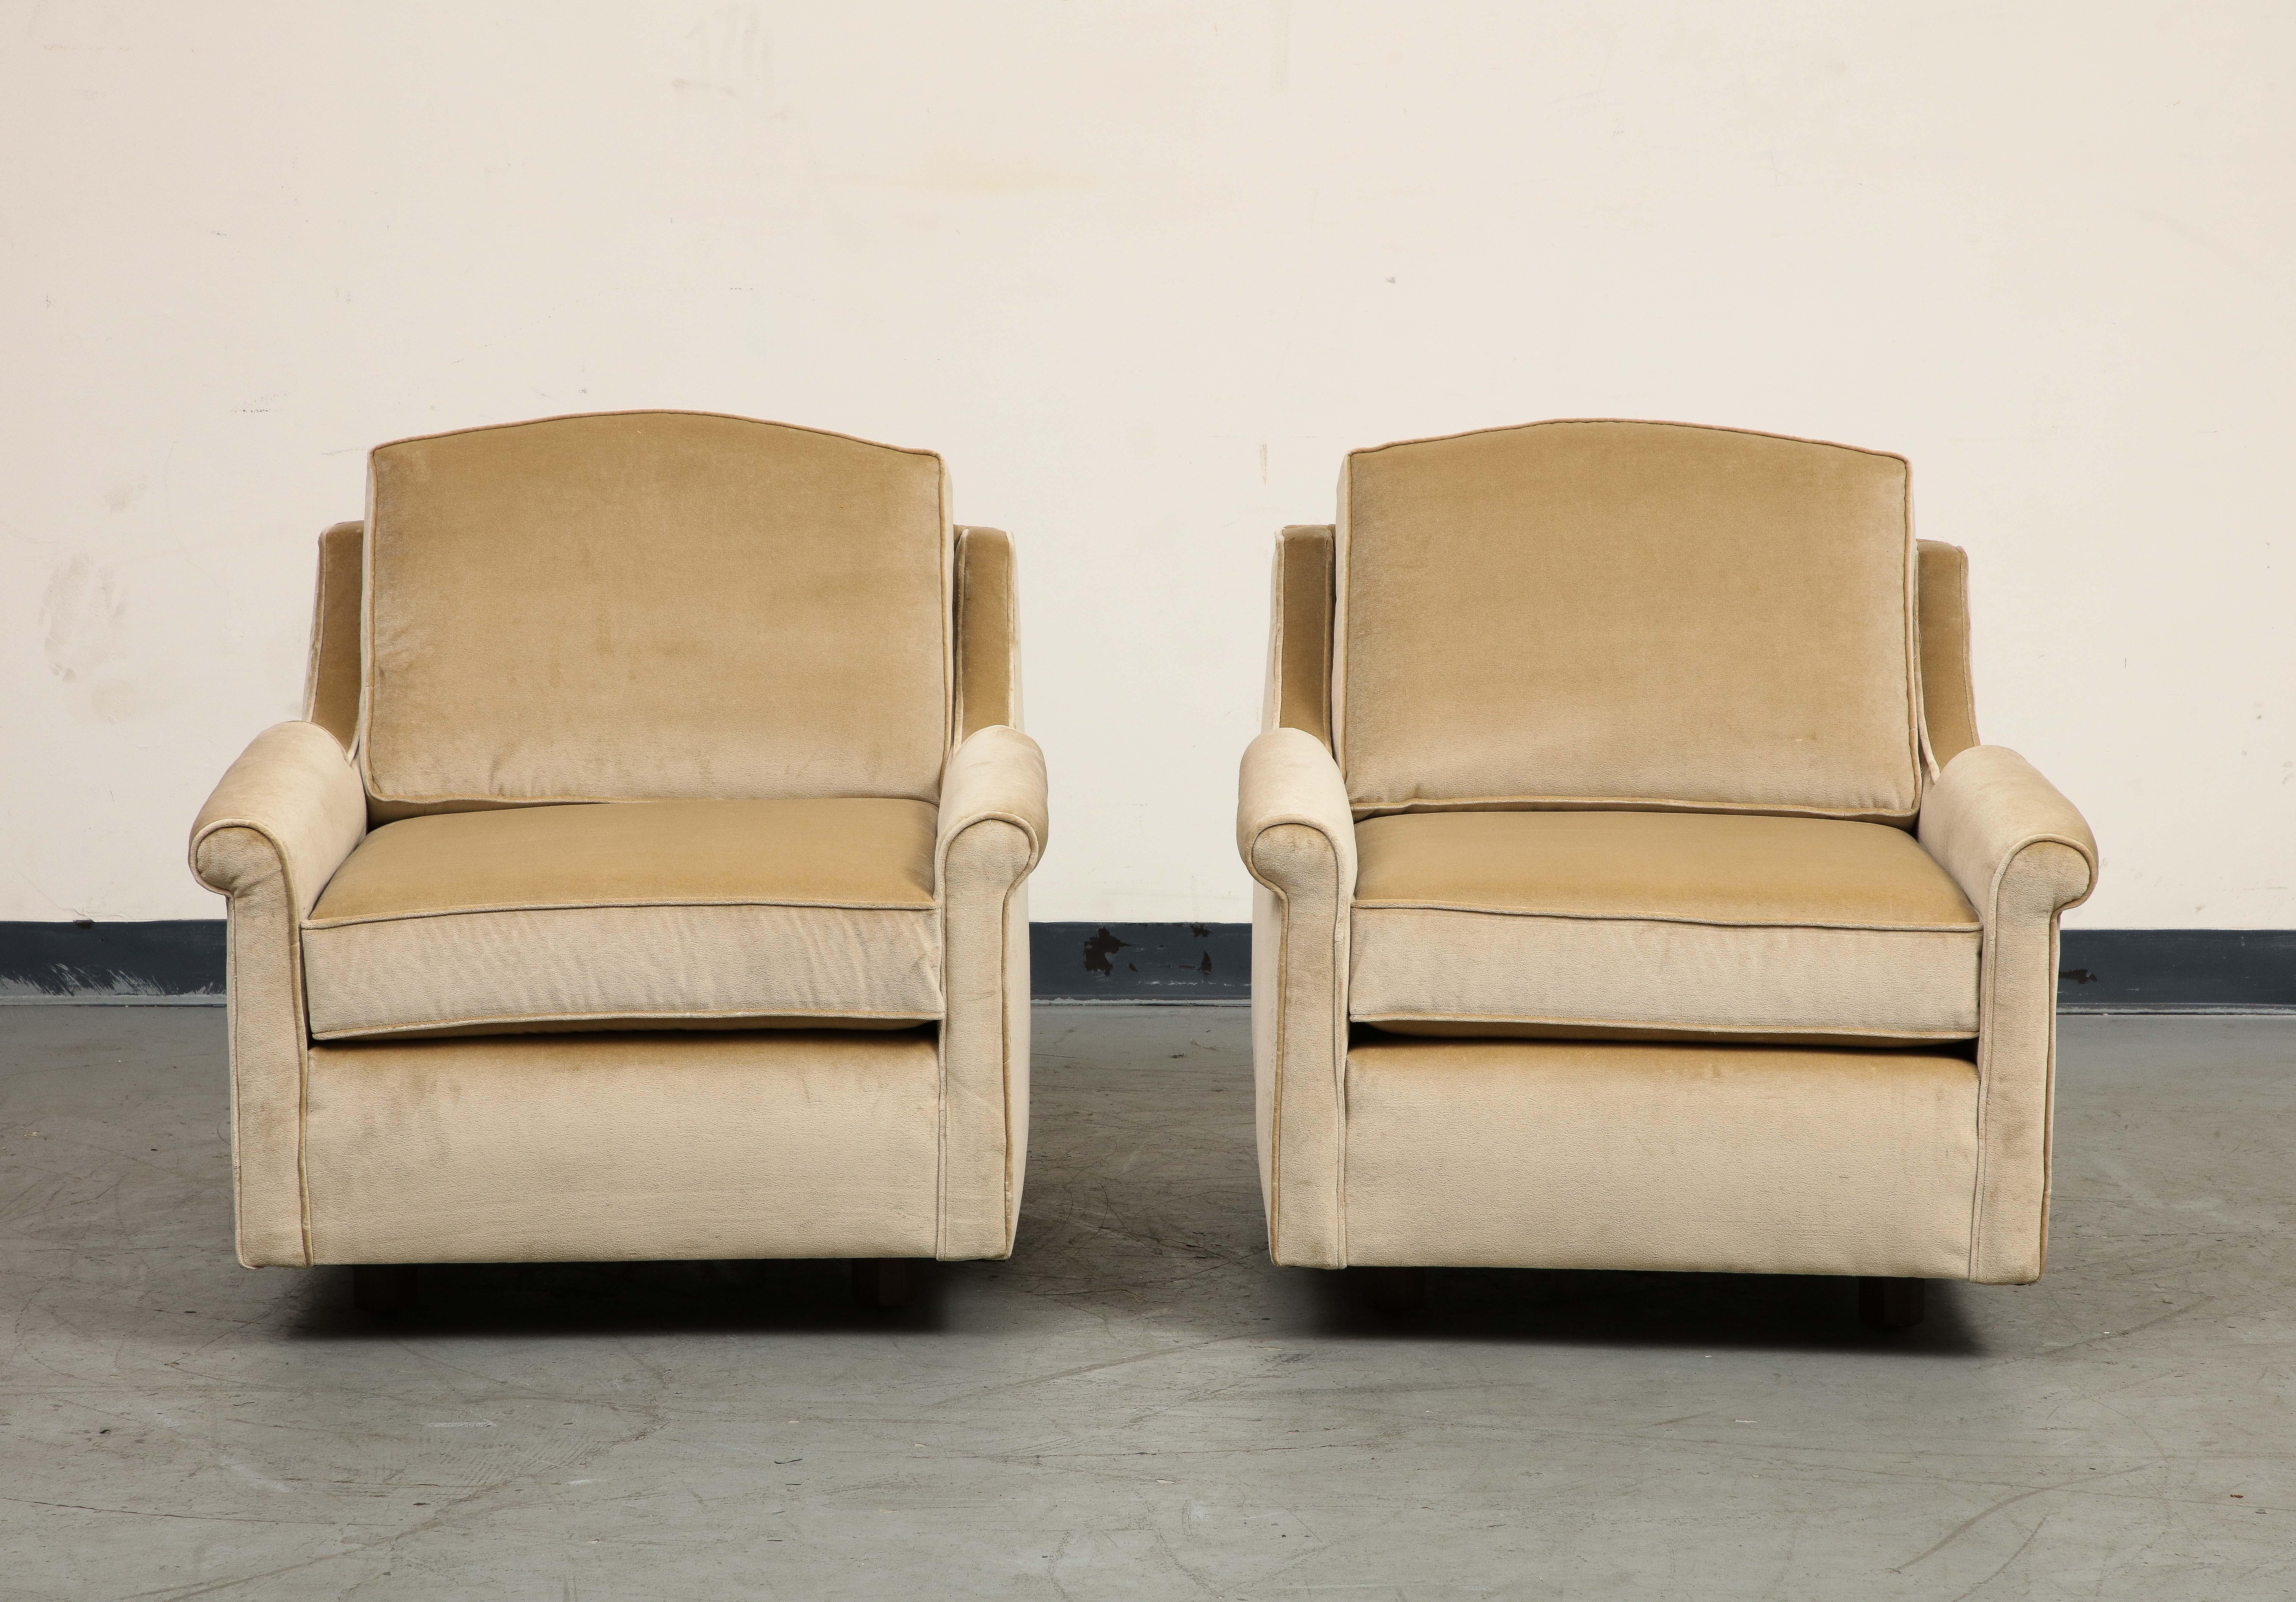 Anmutiges Paar Club Chairs aus den 1940er Jahren, neu gepolstert mit braunem Samt und seitdem nicht mehr benutzt. Minimalistische Holzfüße. Gerollte Armlehnen, großzügige Tiefe und Neigung, Kederdetails. 

Zusätzliche Abmessungen: 
Sitz: 17 